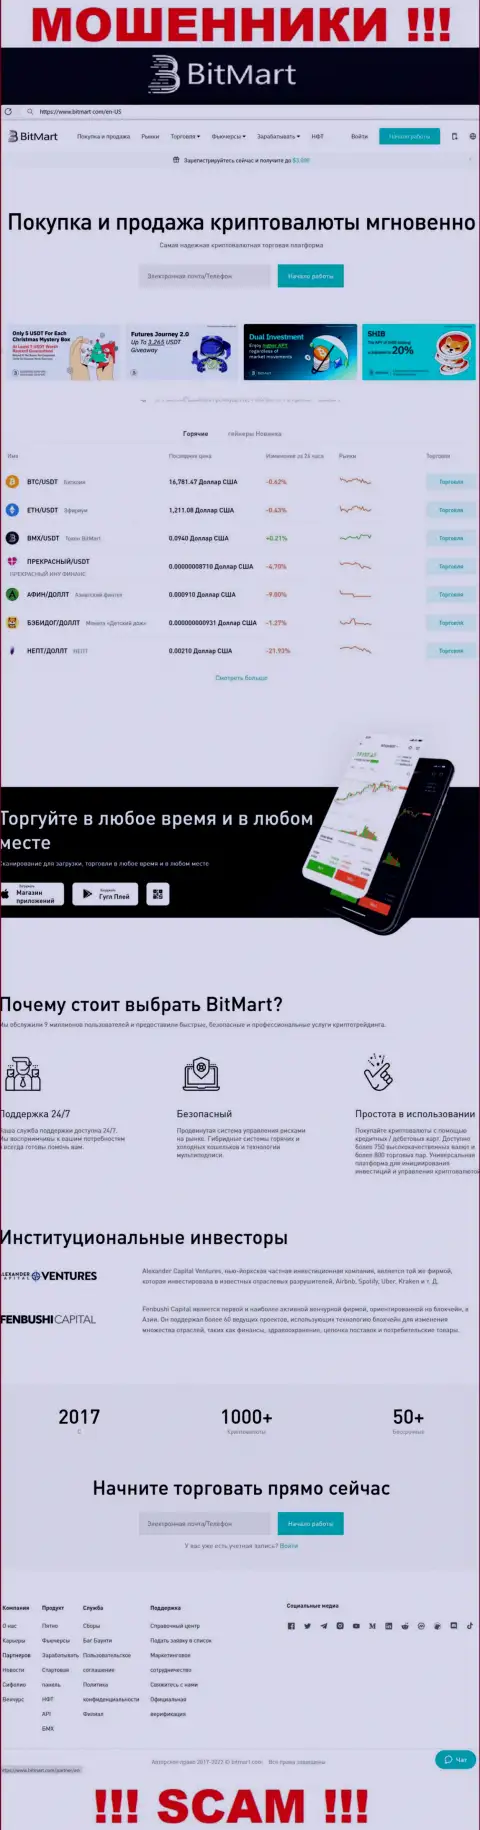 Вид официального web-сервиса мошеннической конторы Bit Mart